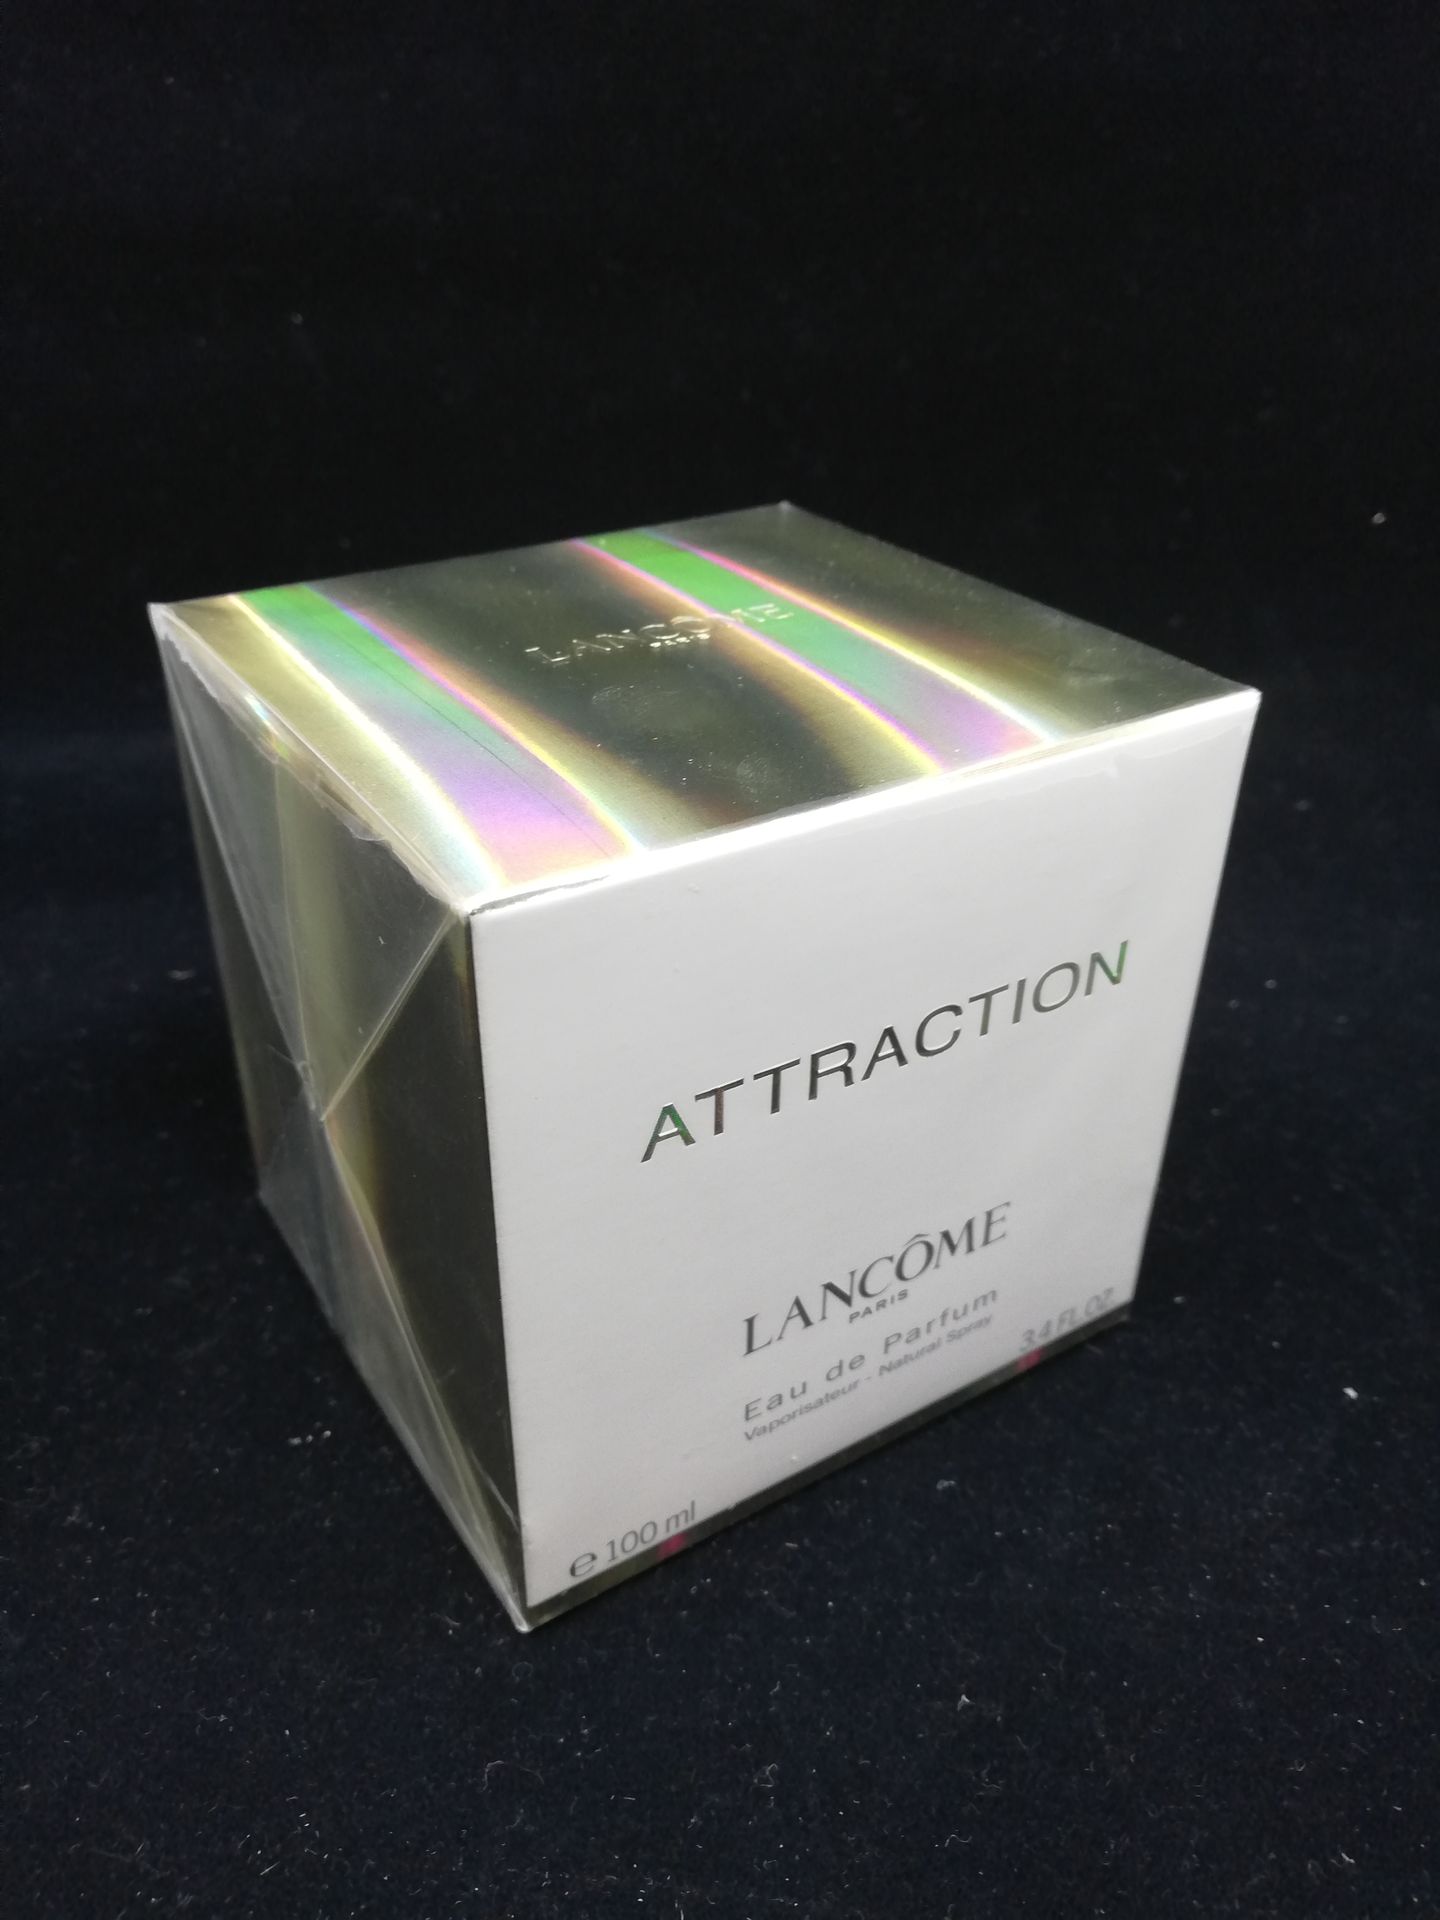 Null Lancôme - "Attraction" - (2003)

Presentado en su caja de cartón con celofá&hellip;